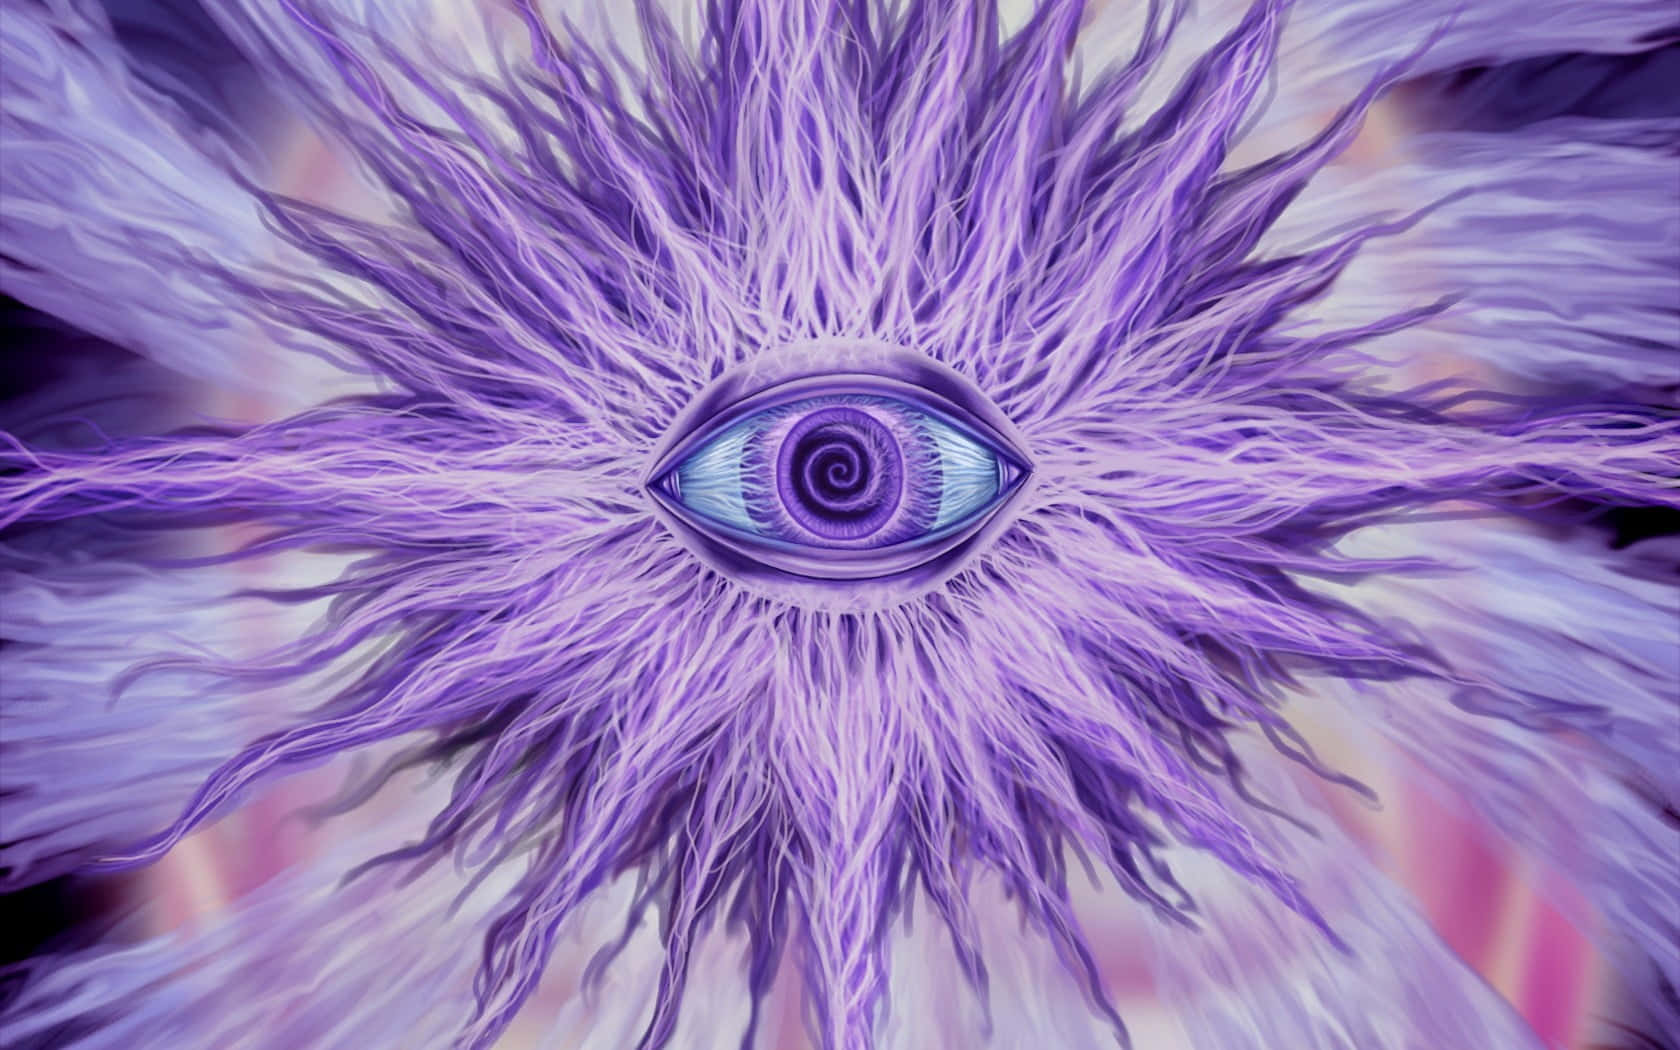 Ojosvioletas En Una Imagen De Una Flor Violeta